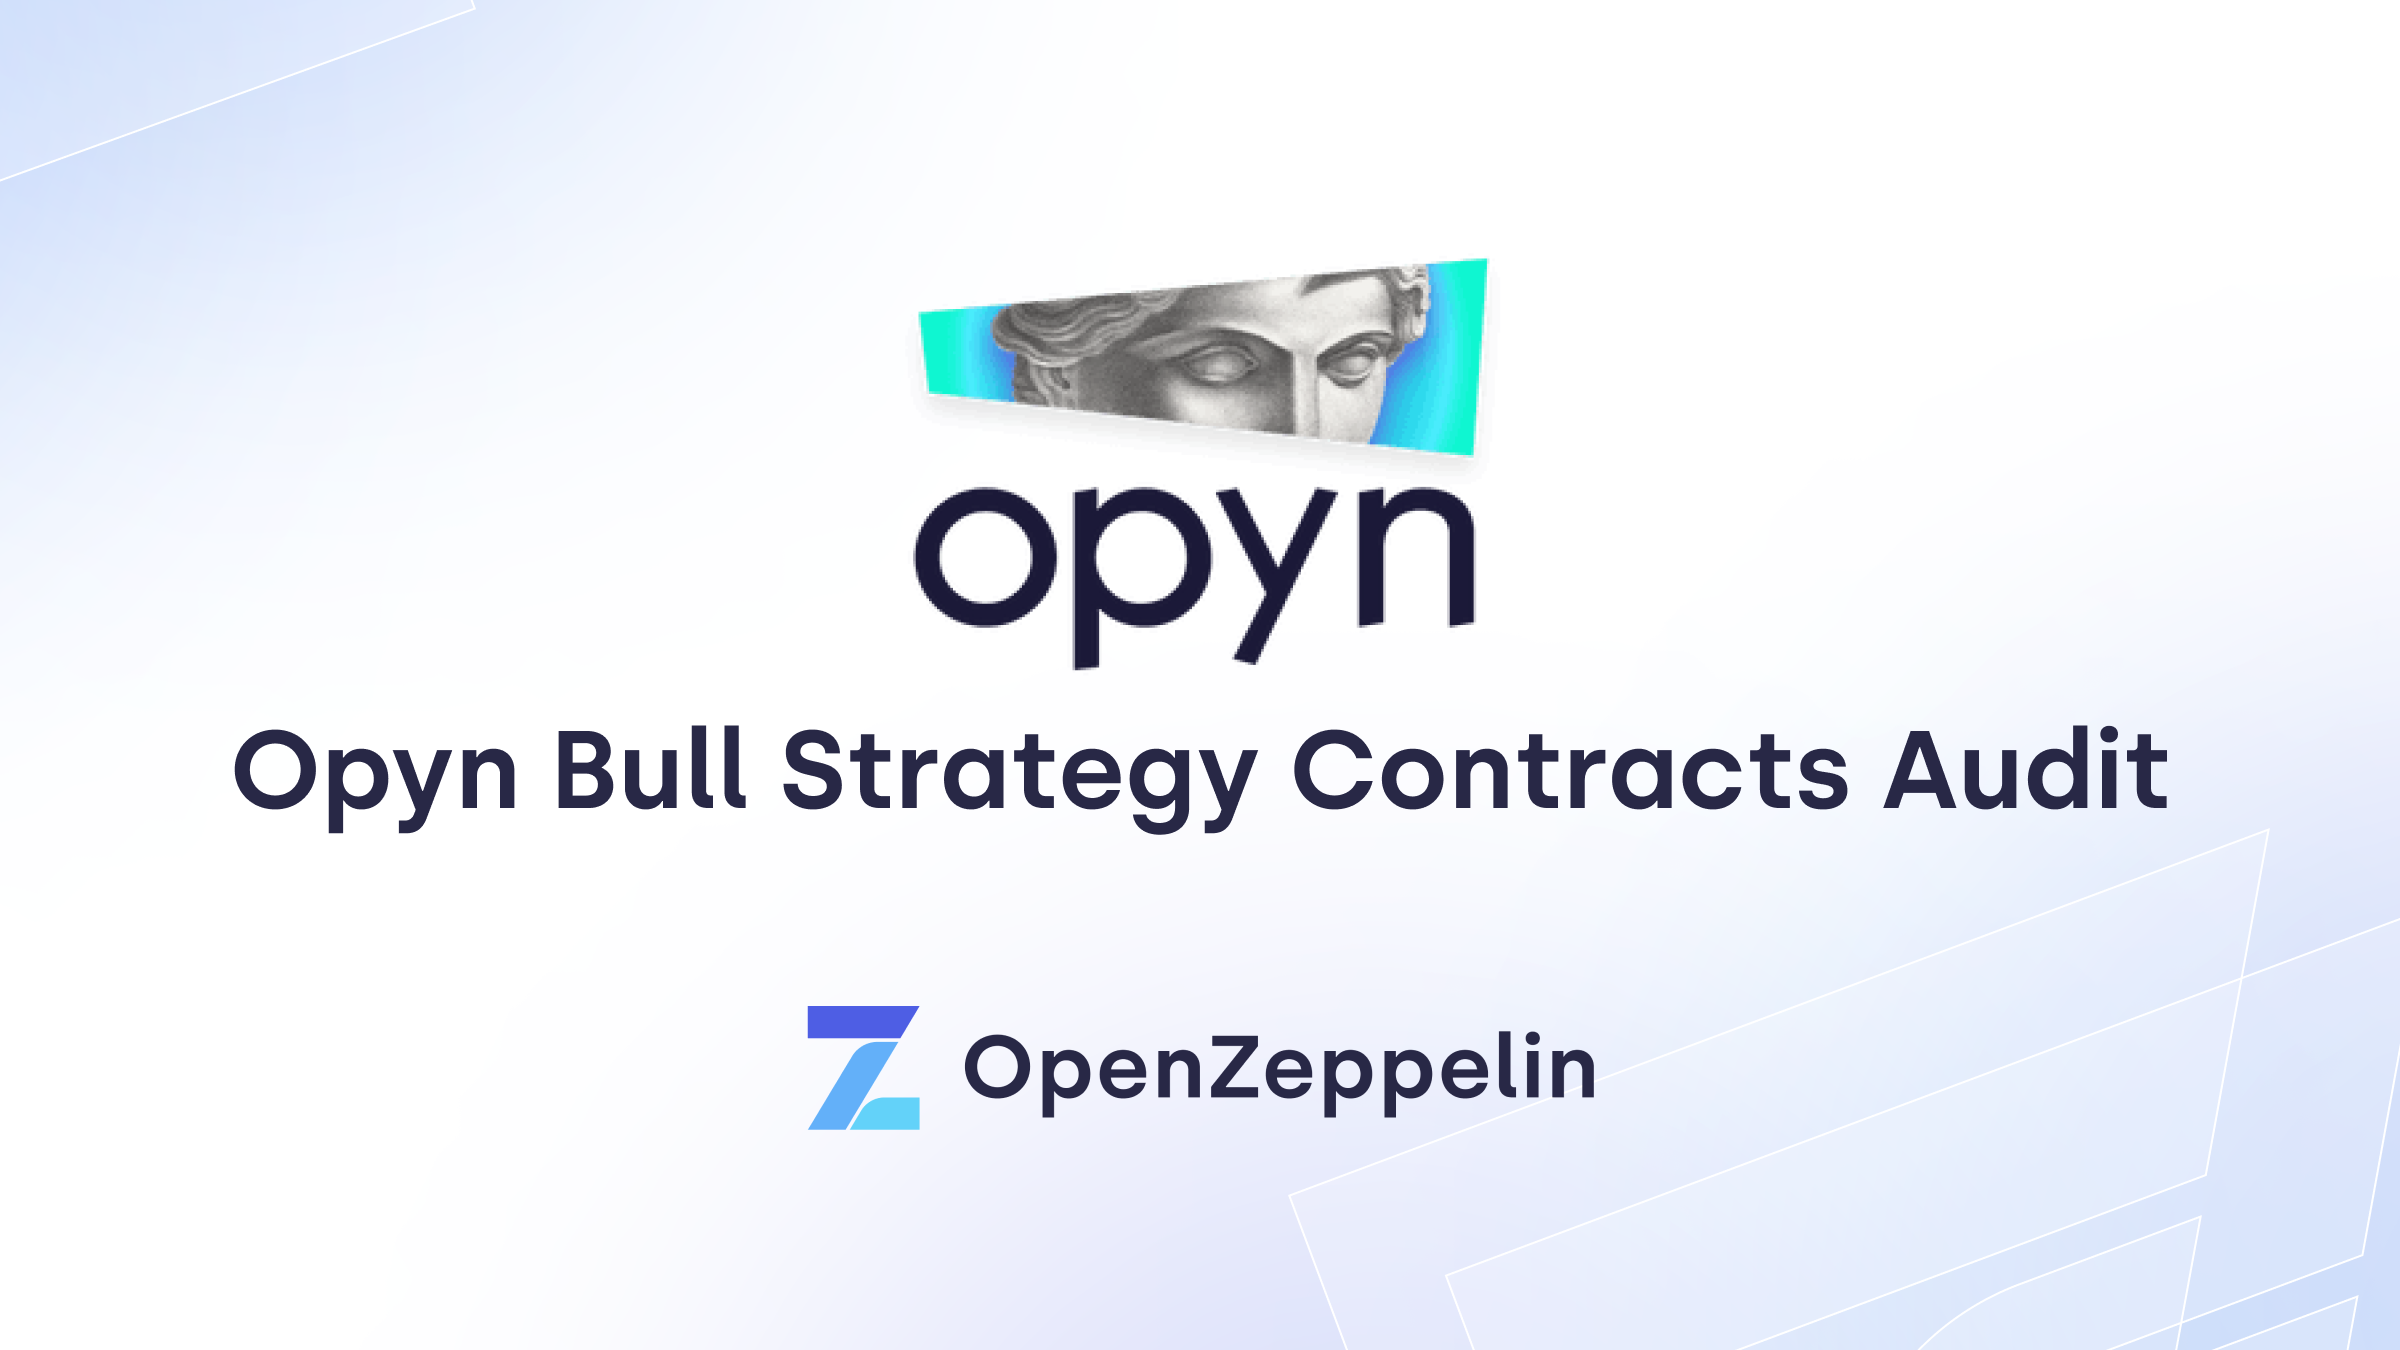 Аудит контрактов стратегии Opyn Bull